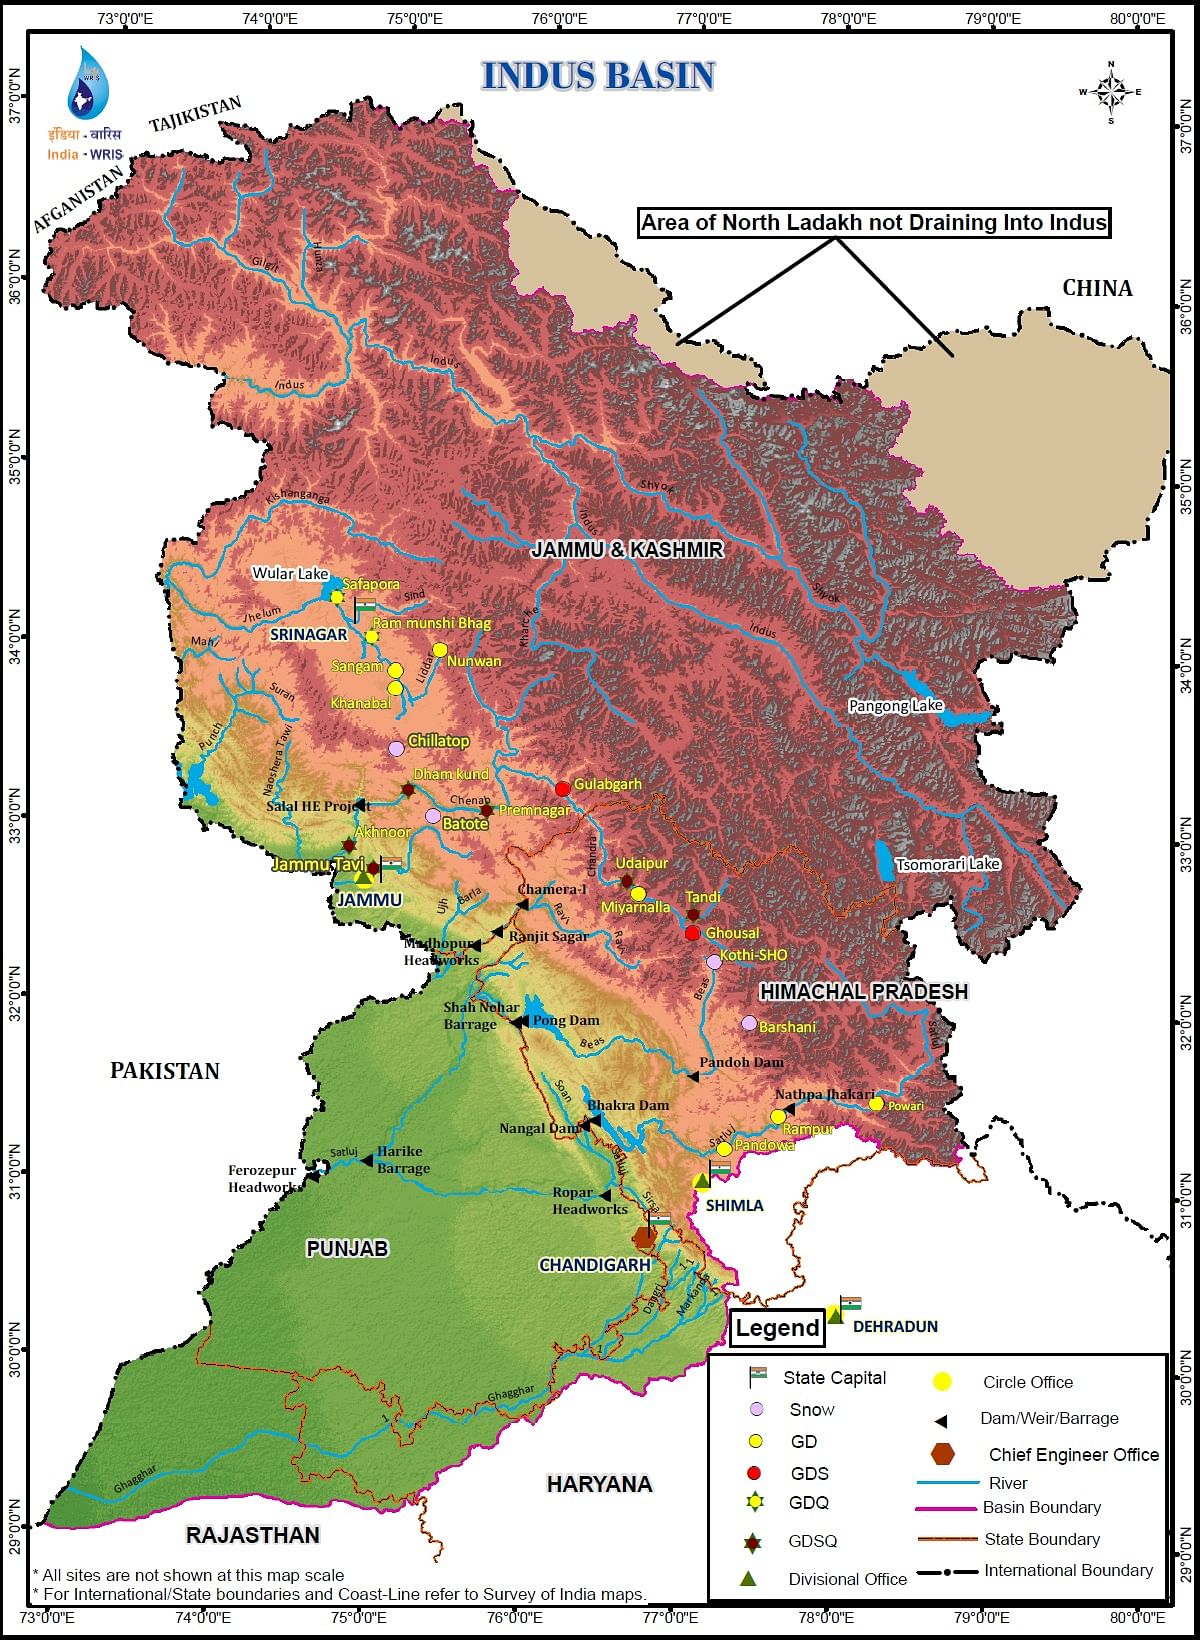 ಸಿಂಧು ನದಿಯ ಜಲಾನಯನ ಪ್ರದೇಶ (Courtesy- India-WRIS wiki)